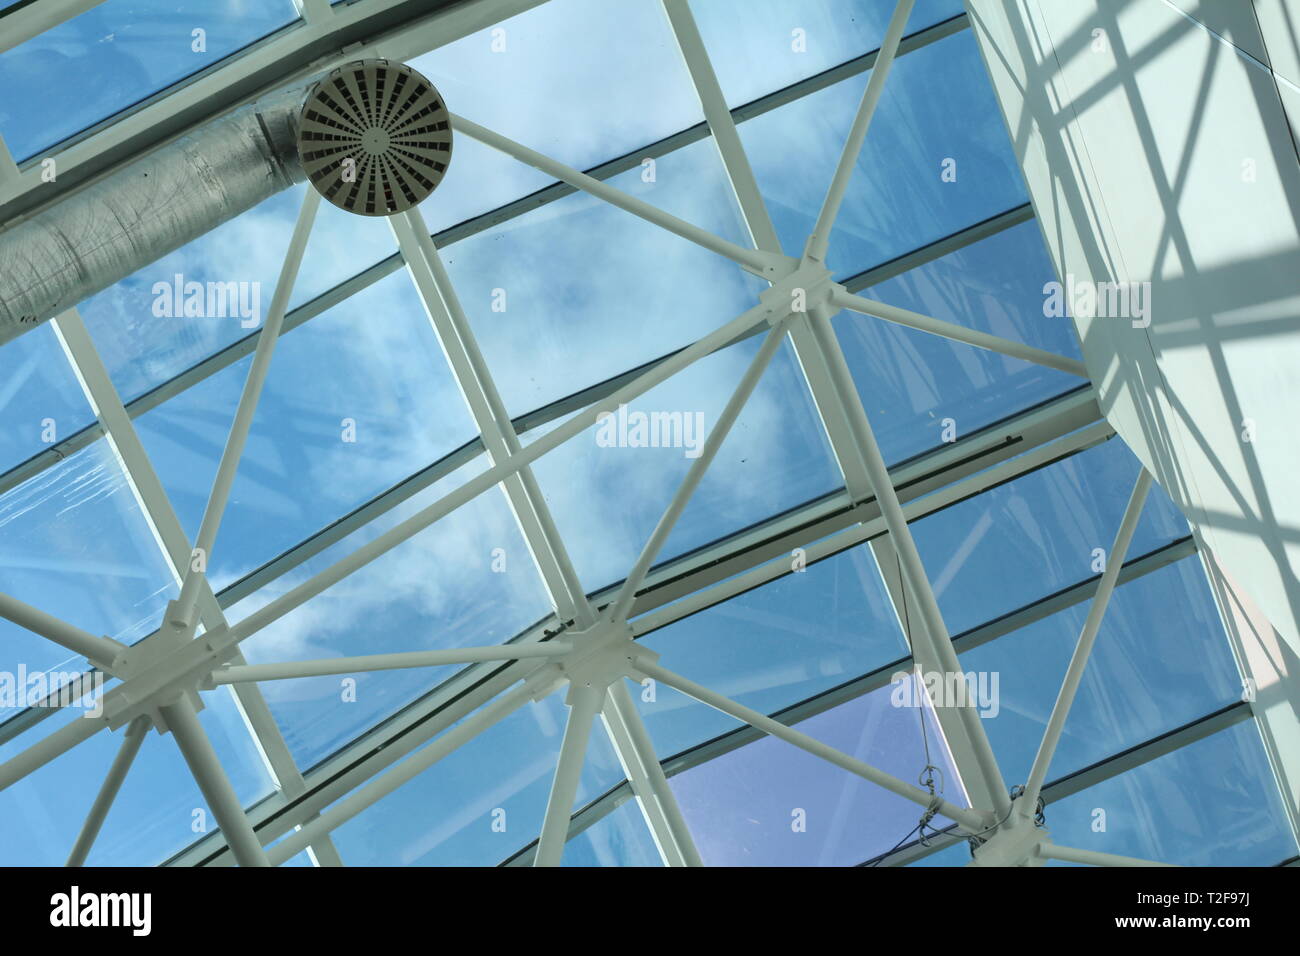 Glasdach im Business Center. Metall und Glas - Architektur und Design in einem Einkaufszentrum. Stockfoto